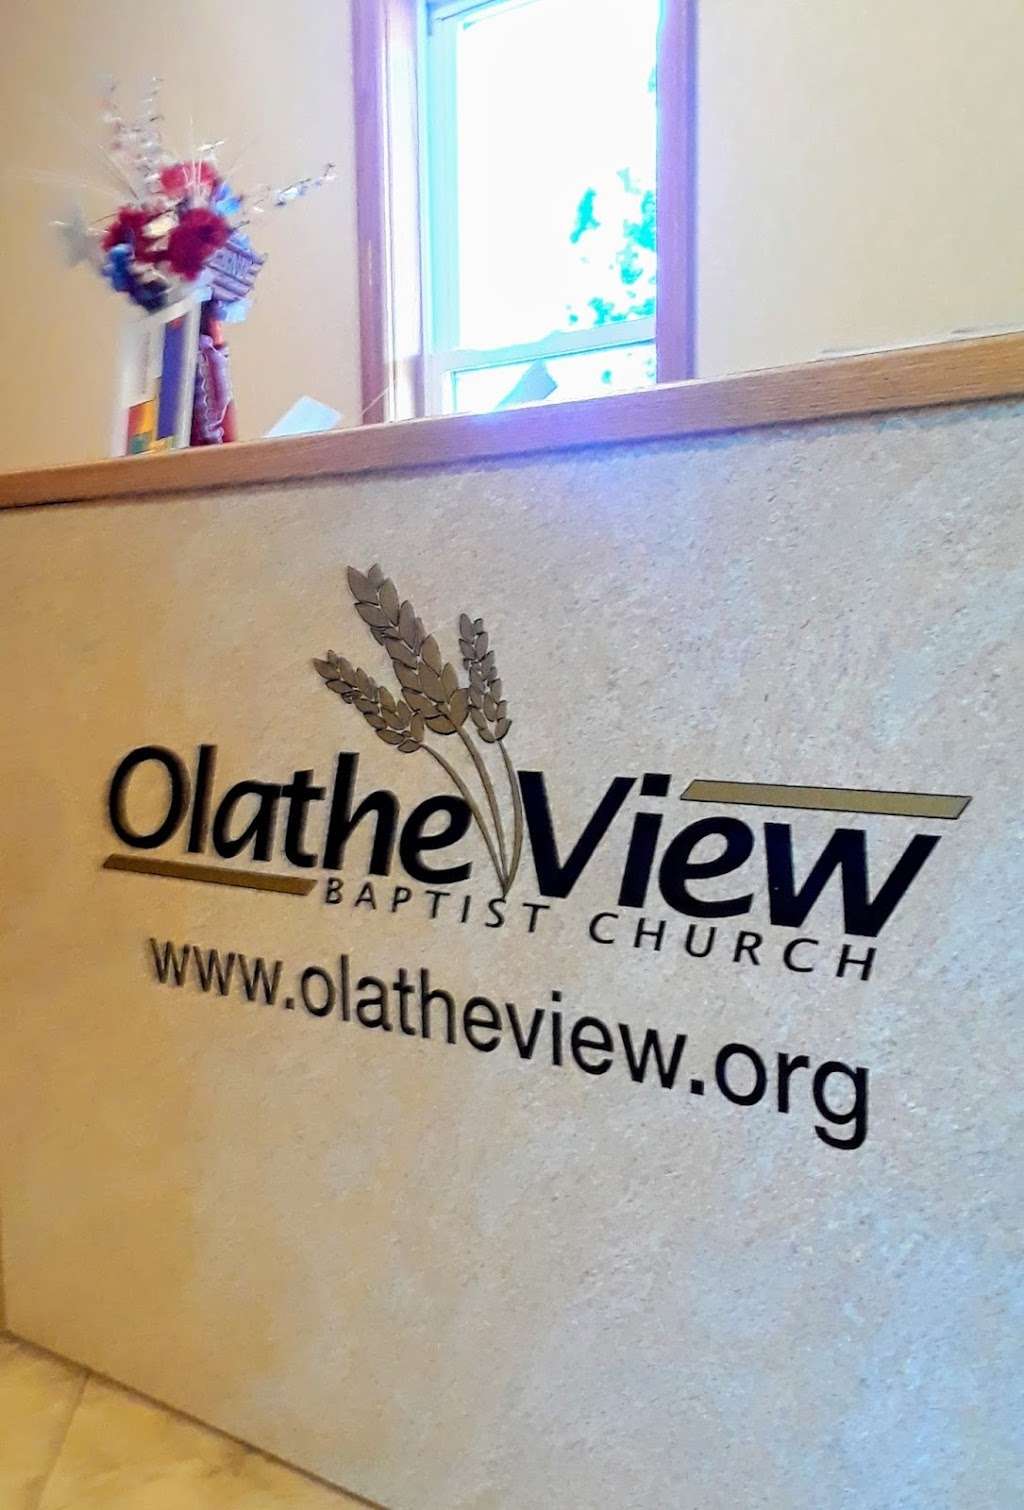 Olathe View Baptist Church | 330 N Olathe View Rd, Olathe, KS 66061, USA | Phone: (913) 829-0355